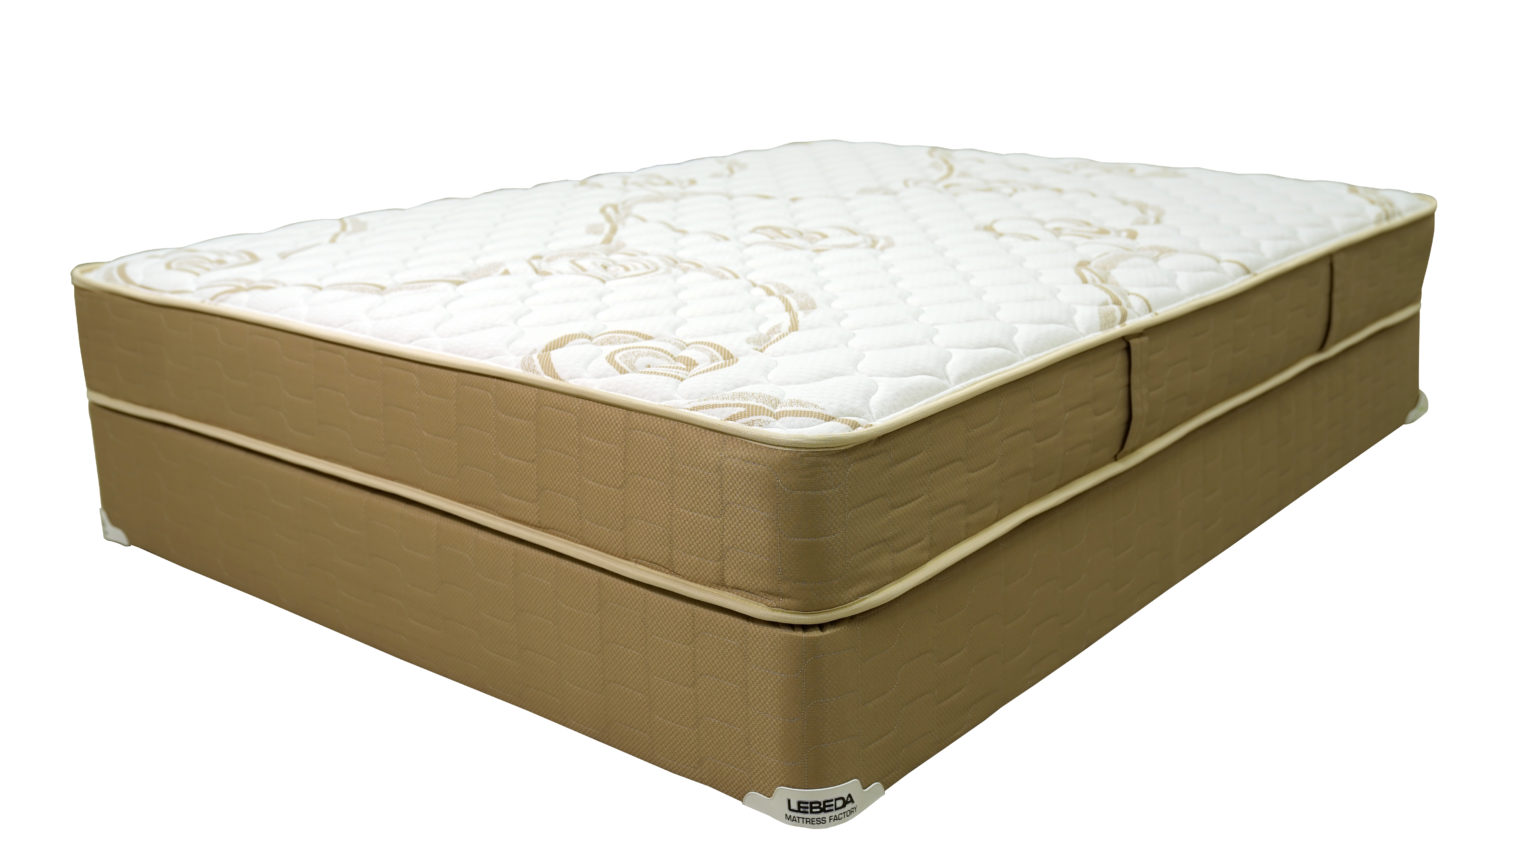 lebeda augusta mattress reviews